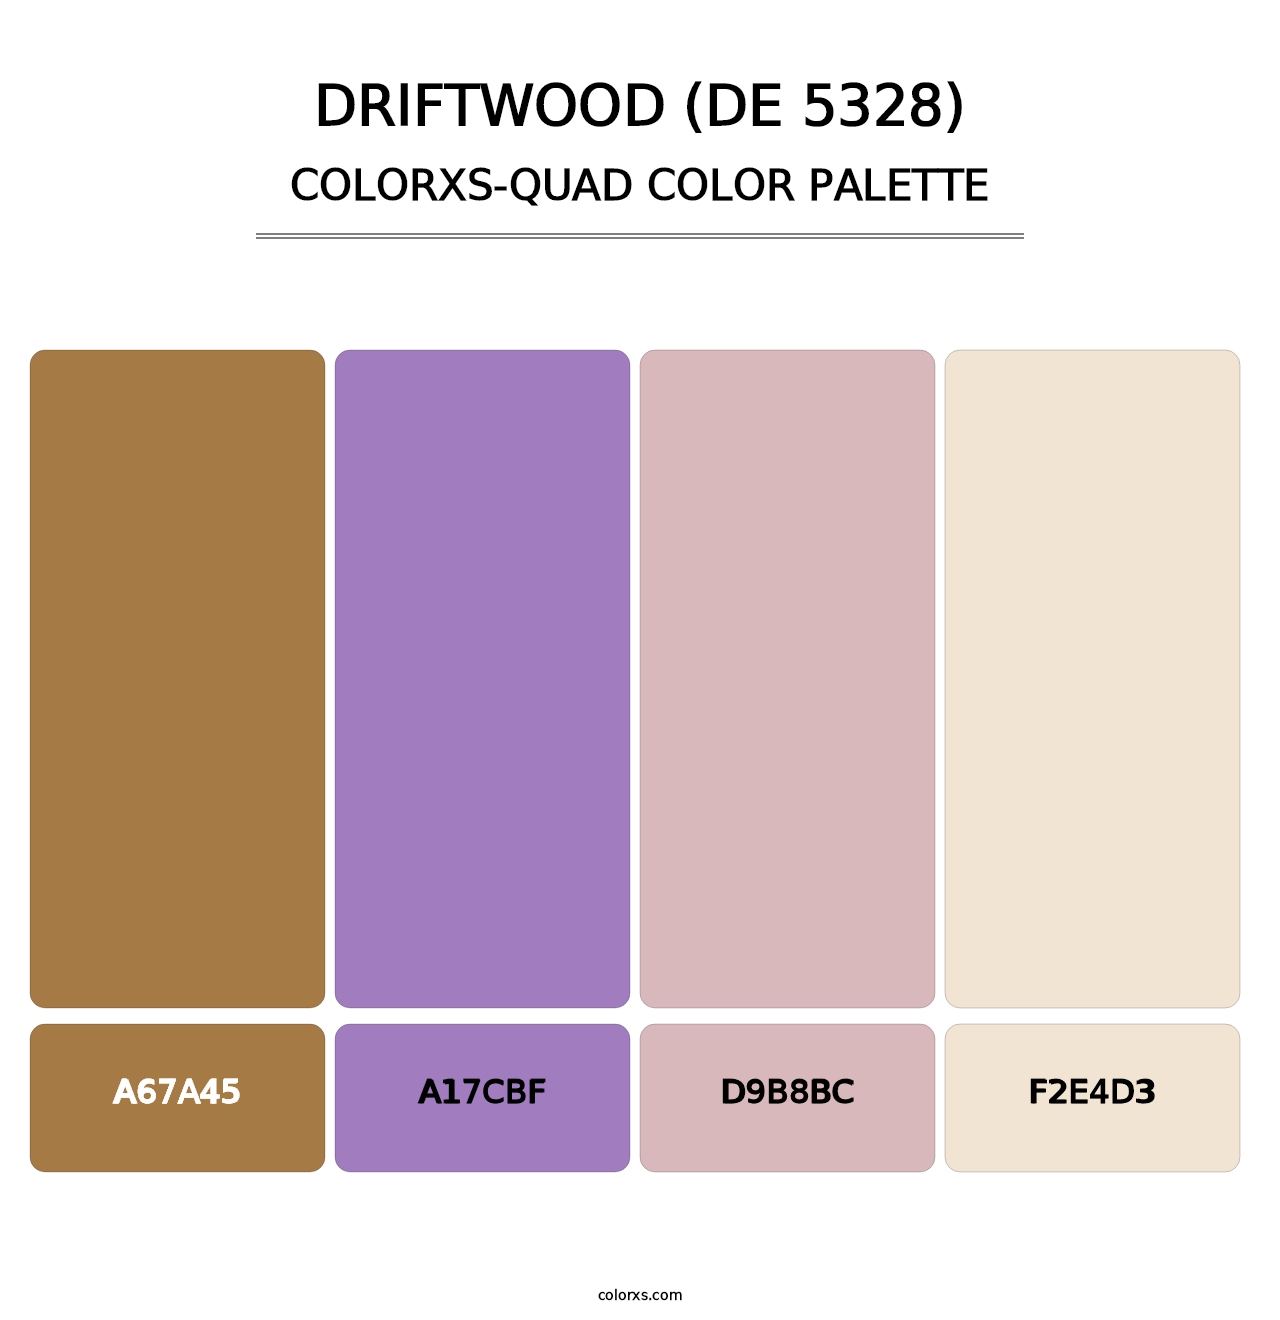 Driftwood (DE 5328) - Colorxs Quad Palette